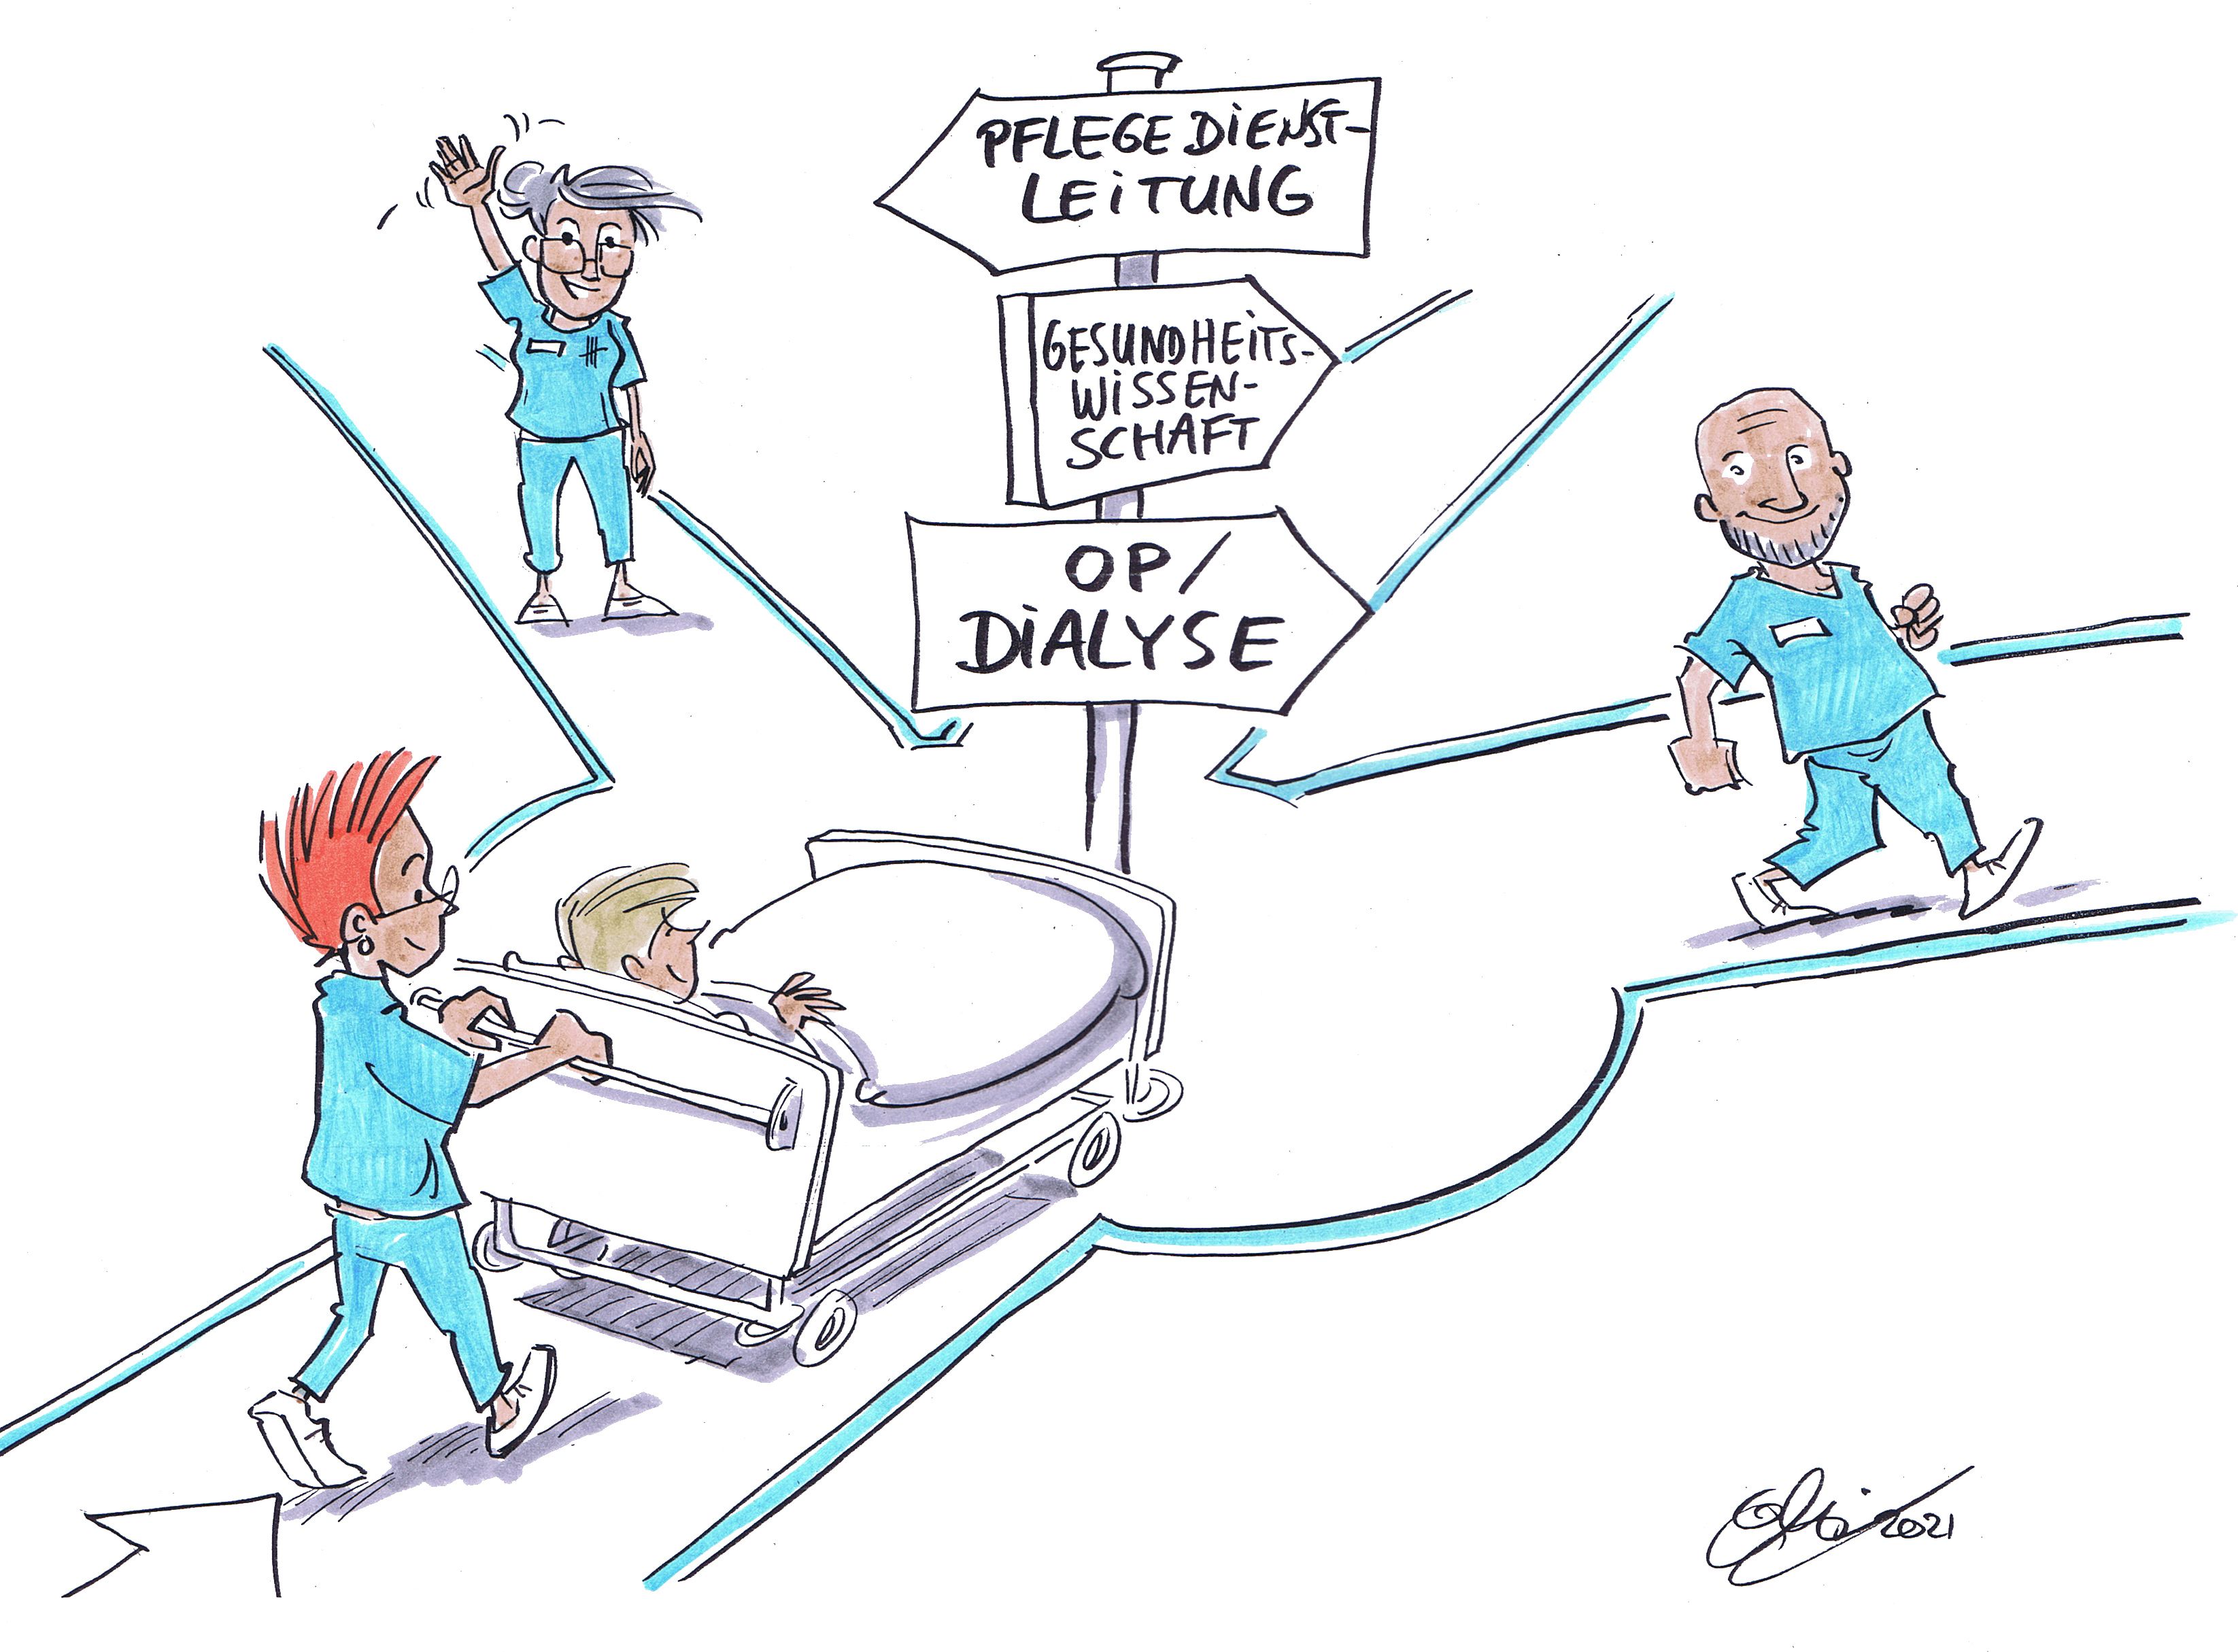 Karikatur: Eine Pflegekraft schiebt ein Bett, in dem ein Patient liegt, auf einen Wegweiser mit drei Pfeilen zu. Der obere Pfeil mit der Aufschrift "Pflegedienstleitung" weist nach links, wo eine grauhaarige Pflegekraft winkt. Der mittlere Pfeil mit der Aufschrift "Gesundheitswissenschaft" weist nach vorne. Der untere Pfeil mit der Aufschrift "OP/Dialyse" weist nach links auf einen Weg, den eine andere Pflegekraft gerade entlanggeht.